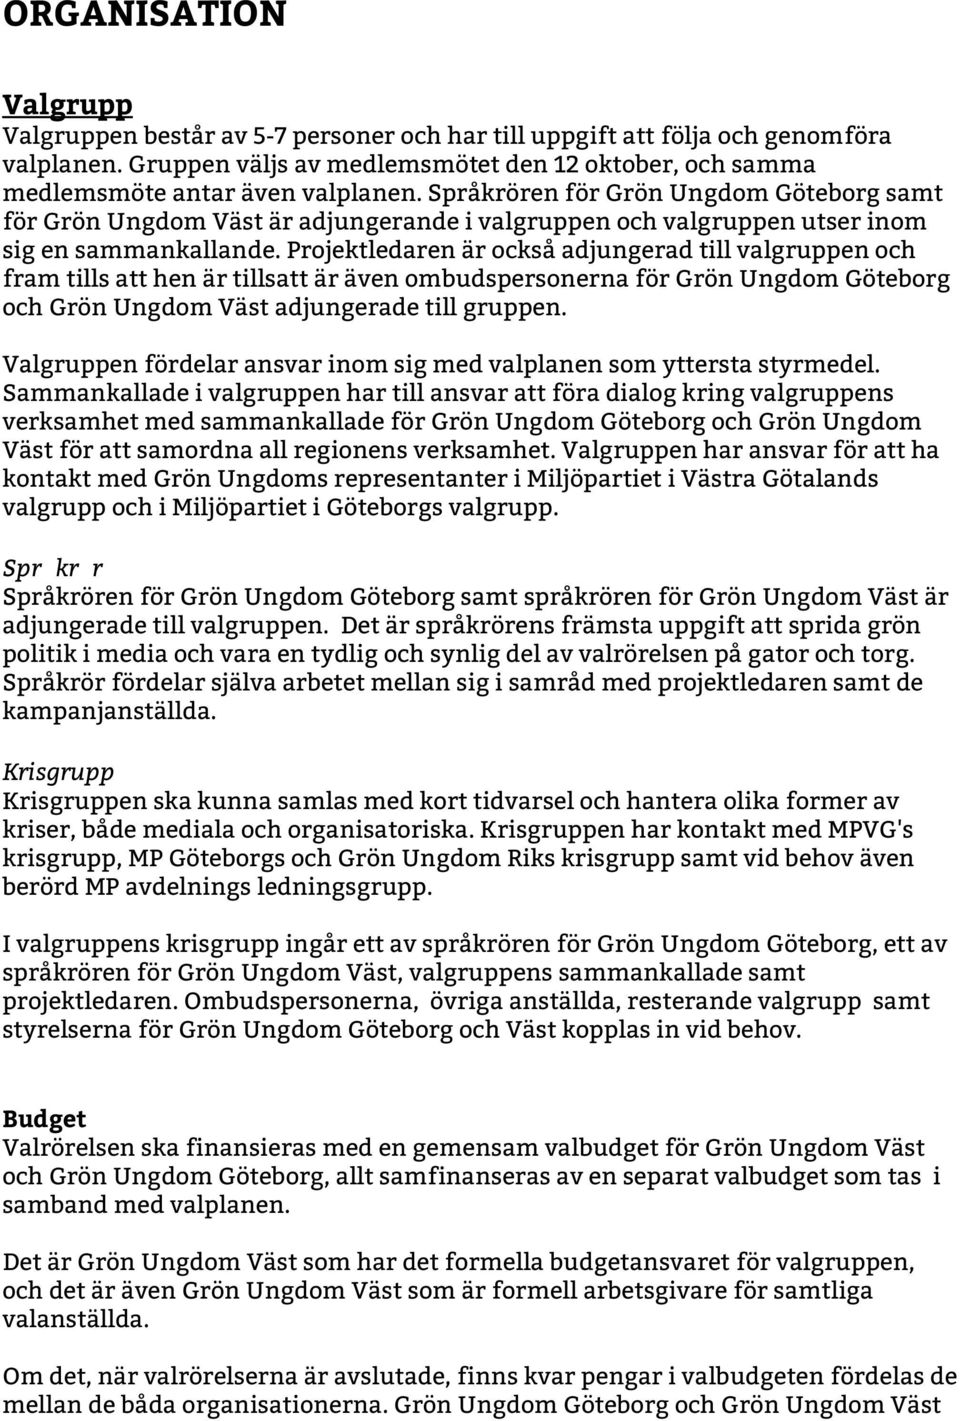 Språkrören för Grön Ungdom Göteborg samt för Grön Ungdom Väst är adjungerande i valgruppen och valgruppen utser inom sig en sammankallande.